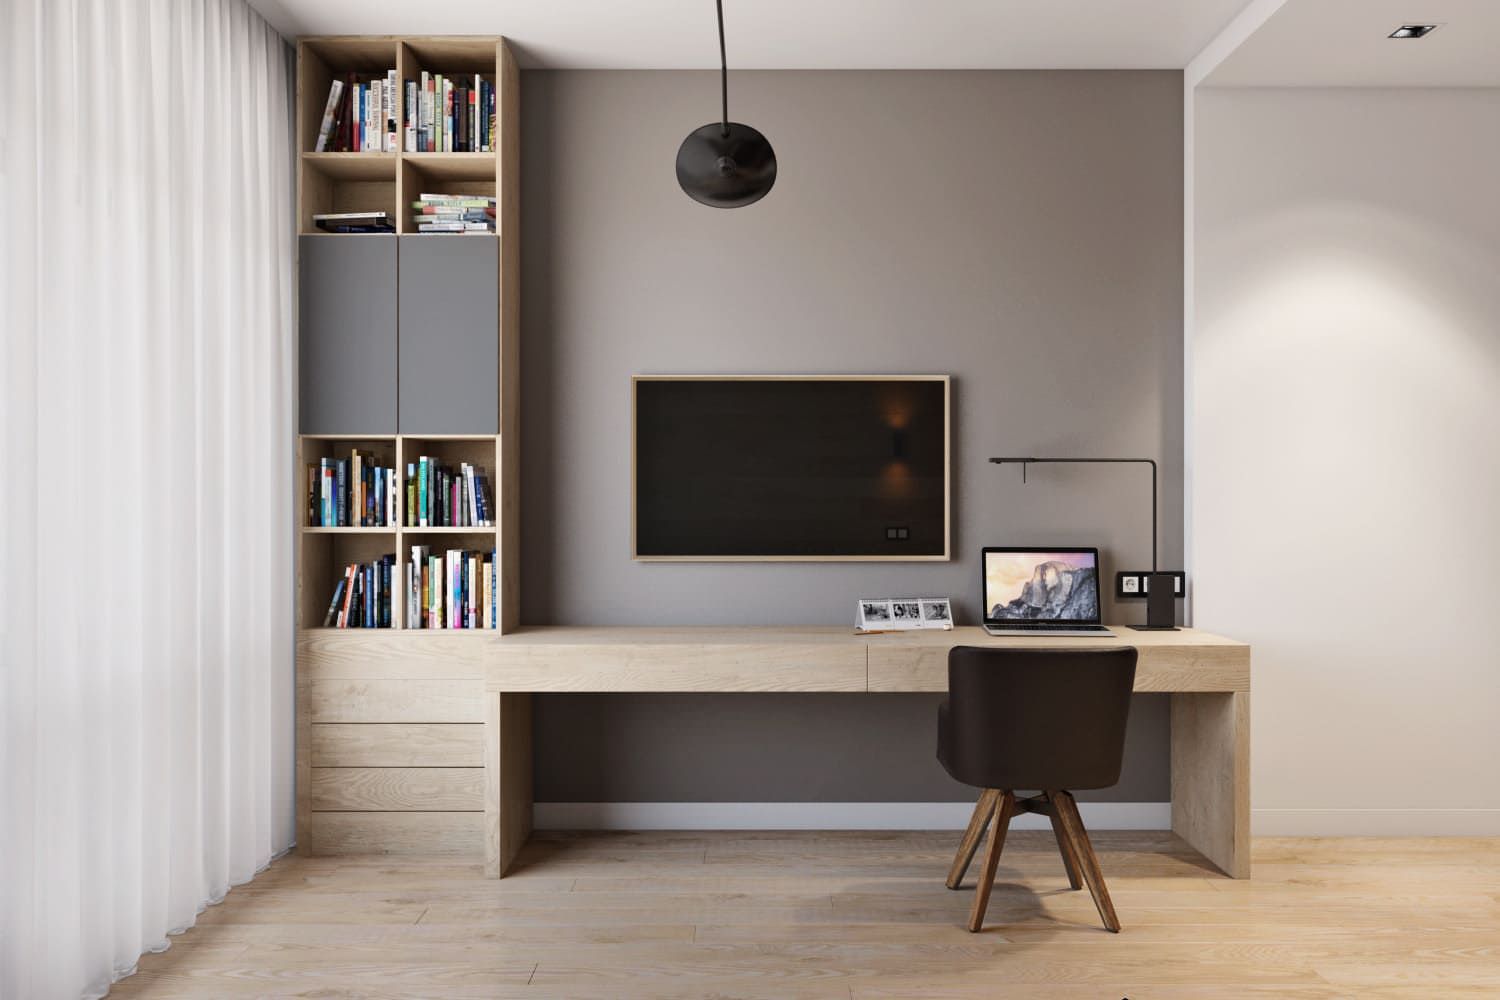 Căn phòng gọn gàng hơn với cách thiết kế kệ tivi kết hợp bàn làm việc có kèm tủ sách nhỏ đụng trần